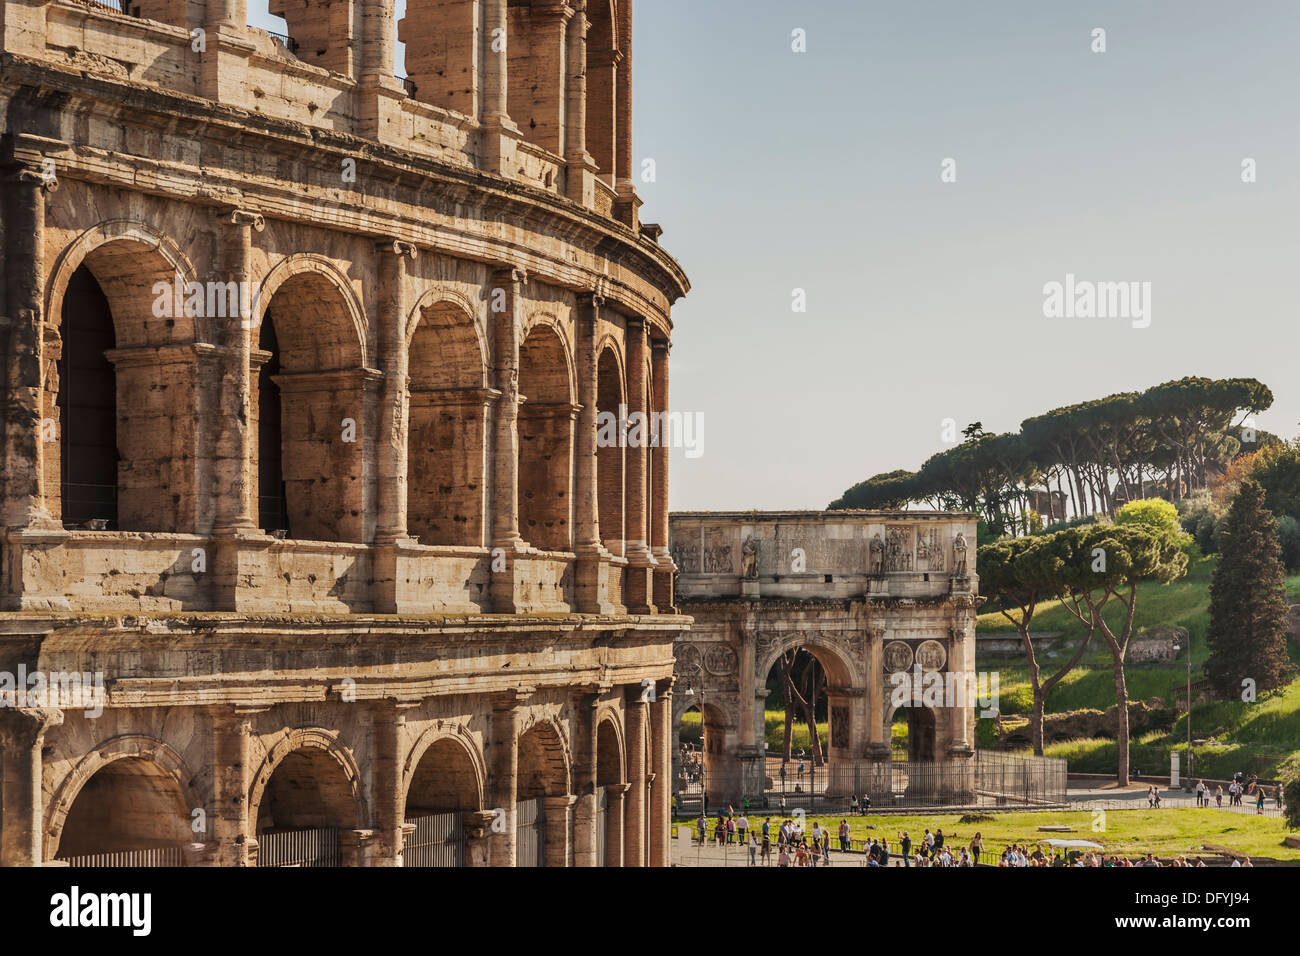 Le Colisée est le plus grand amphithéâtre construit dans la Rome antique de 72 à 80 après J.-C., Rome, Latium, Italie, Europe Banque D'Images